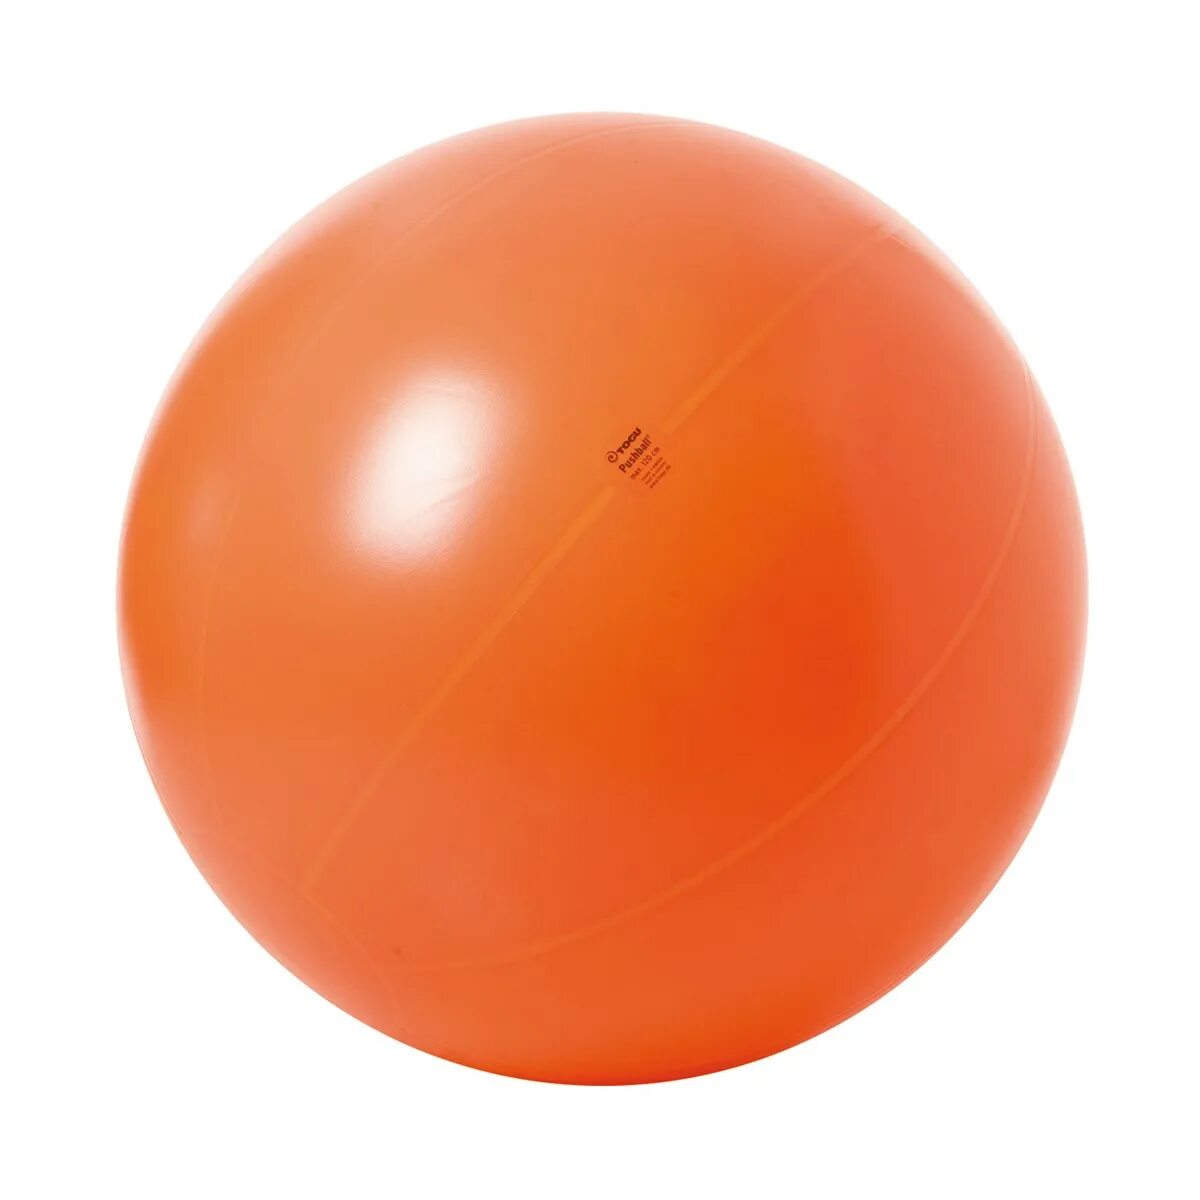 Мяч гимнастический большой Physio Gymnic 120 см. Togu мяч гимнастический 65 см. Массажный реабилитационный мяч BMB-55. Мяч для массажа оранжевый. Max ball